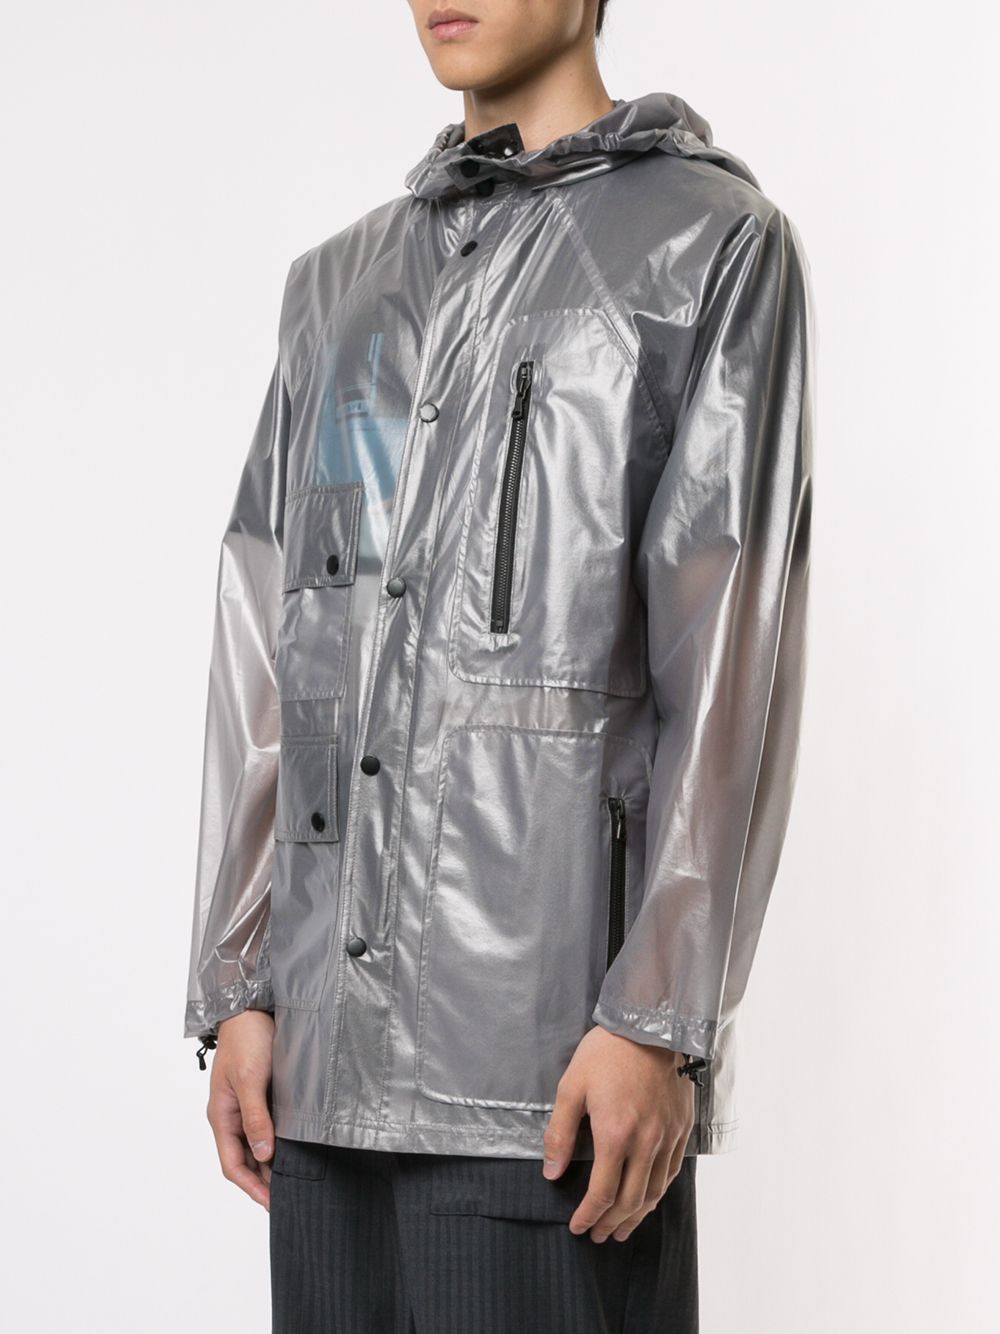 фото Indice Studio прозрачная непромокаемая куртка